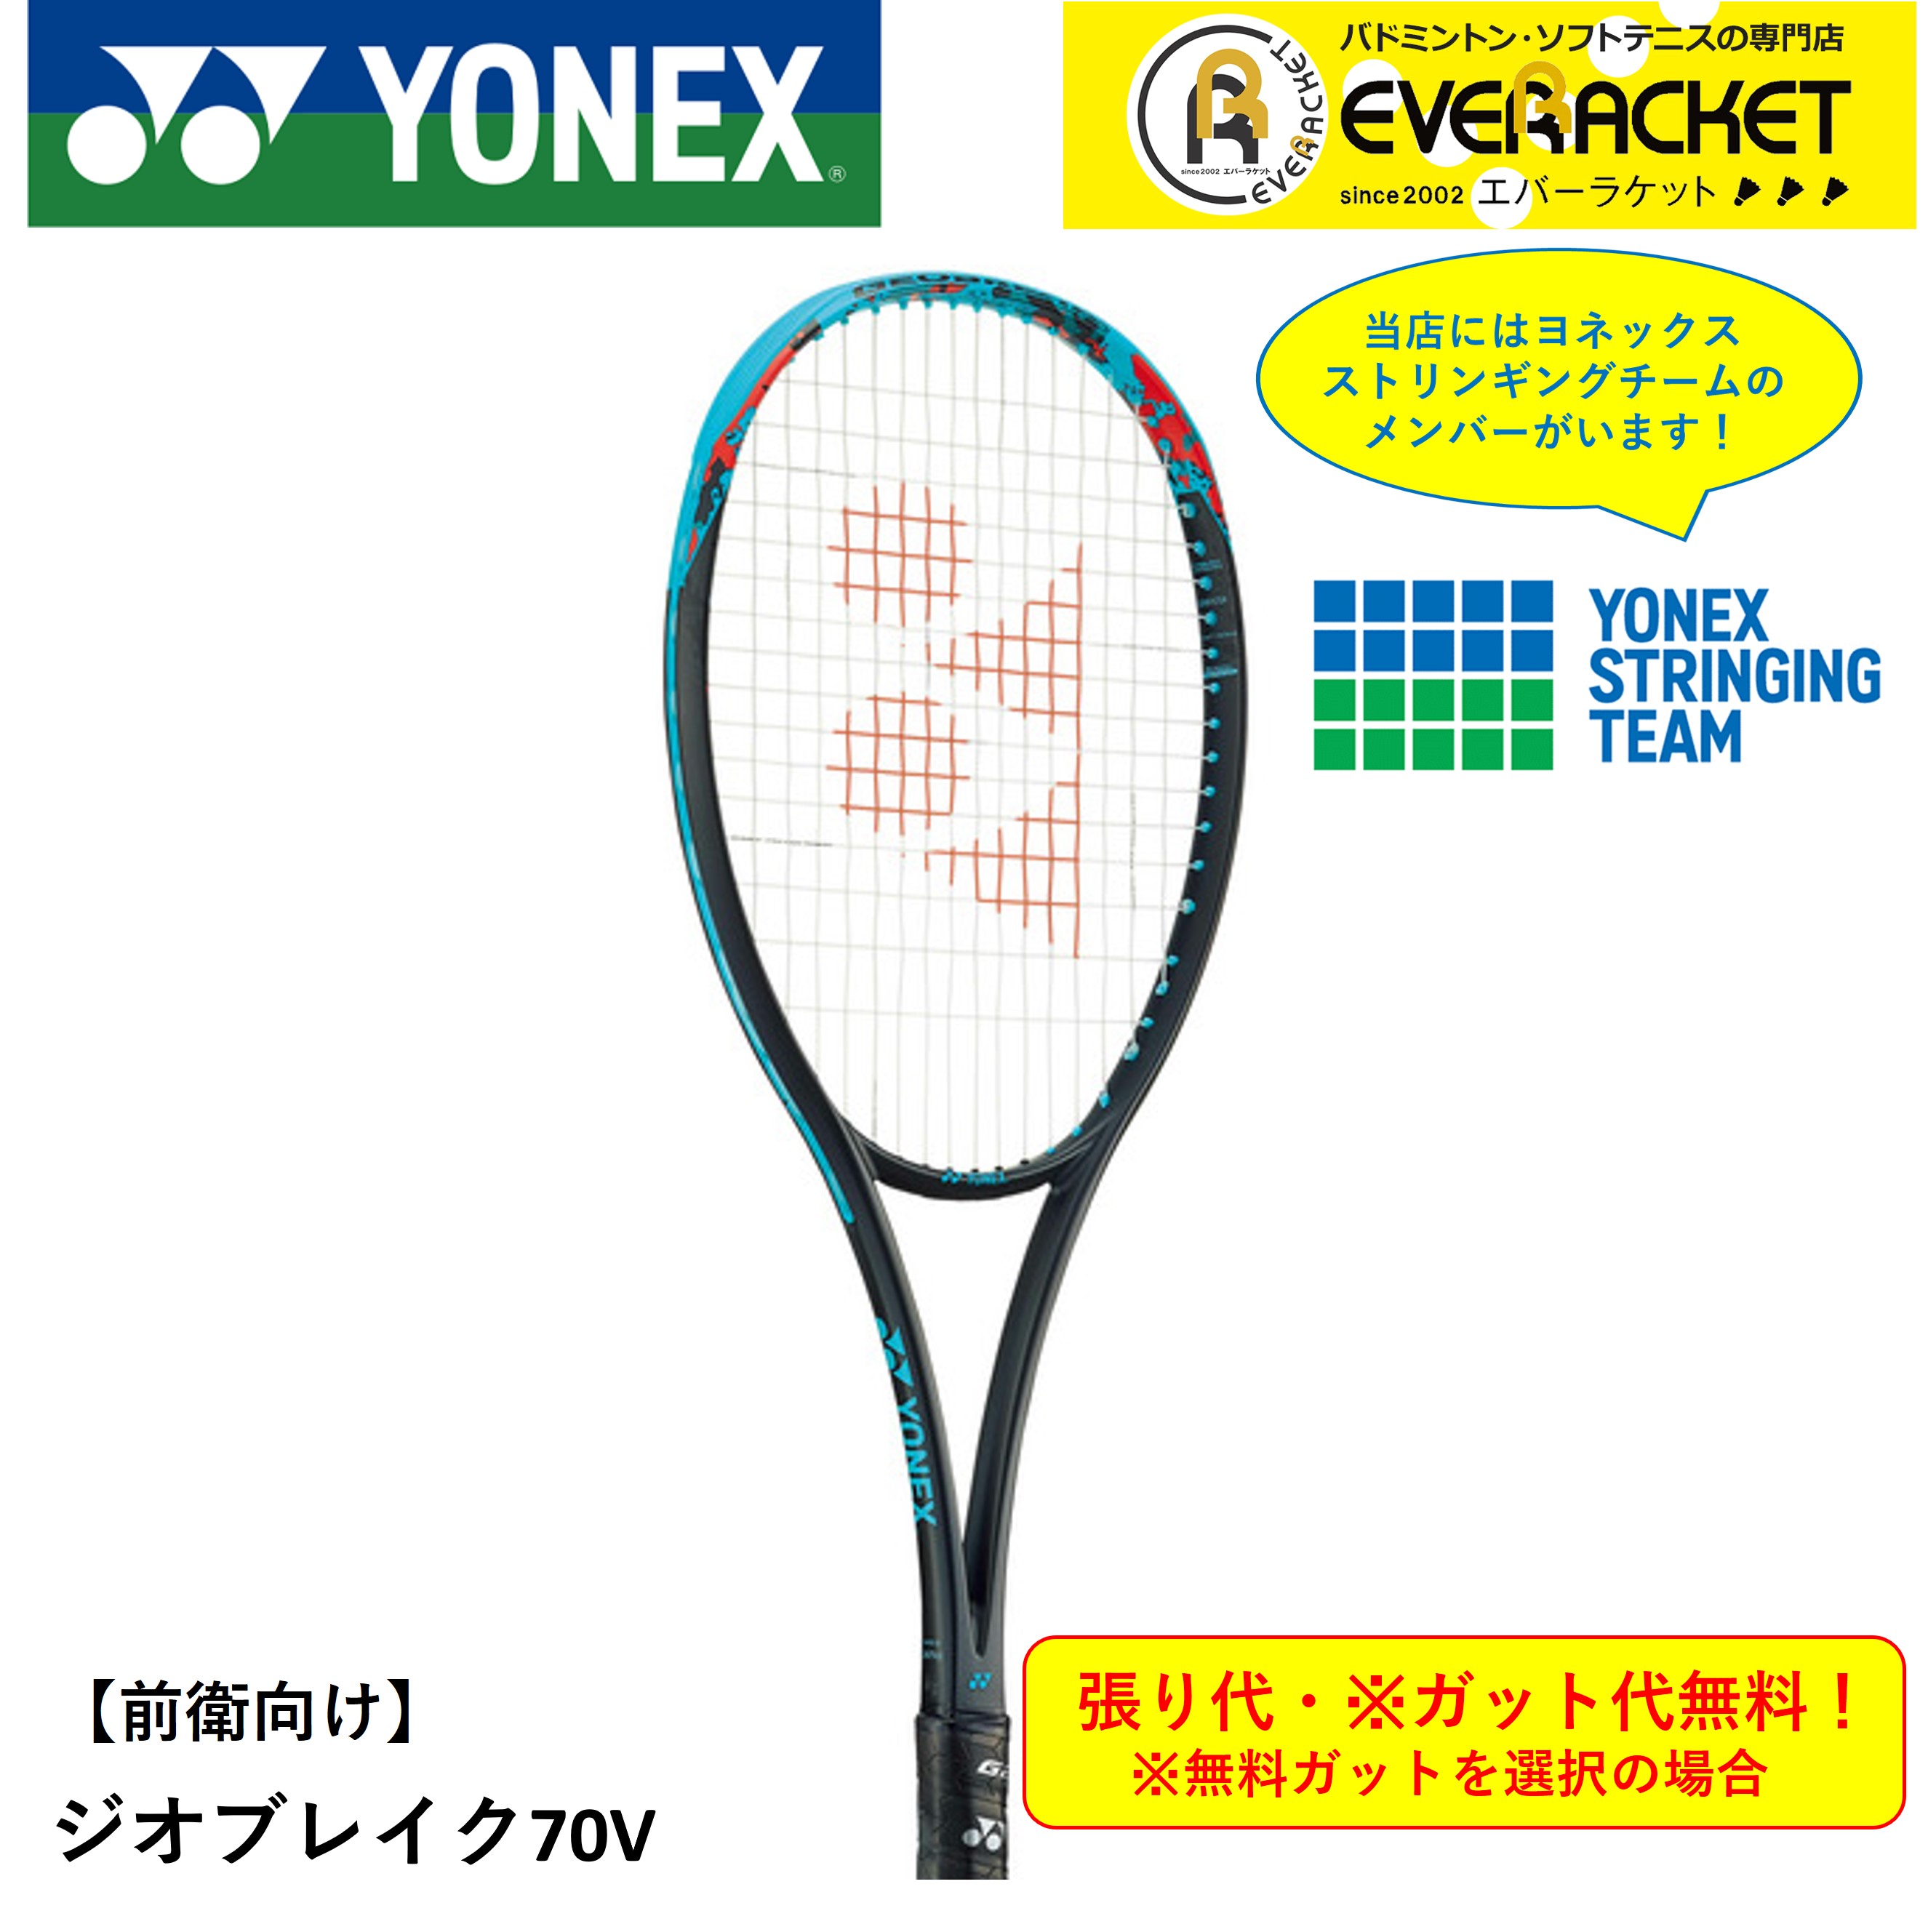 ヨネックス YONEX ソフトテニスラケット GEO70V ジオブレイク70V